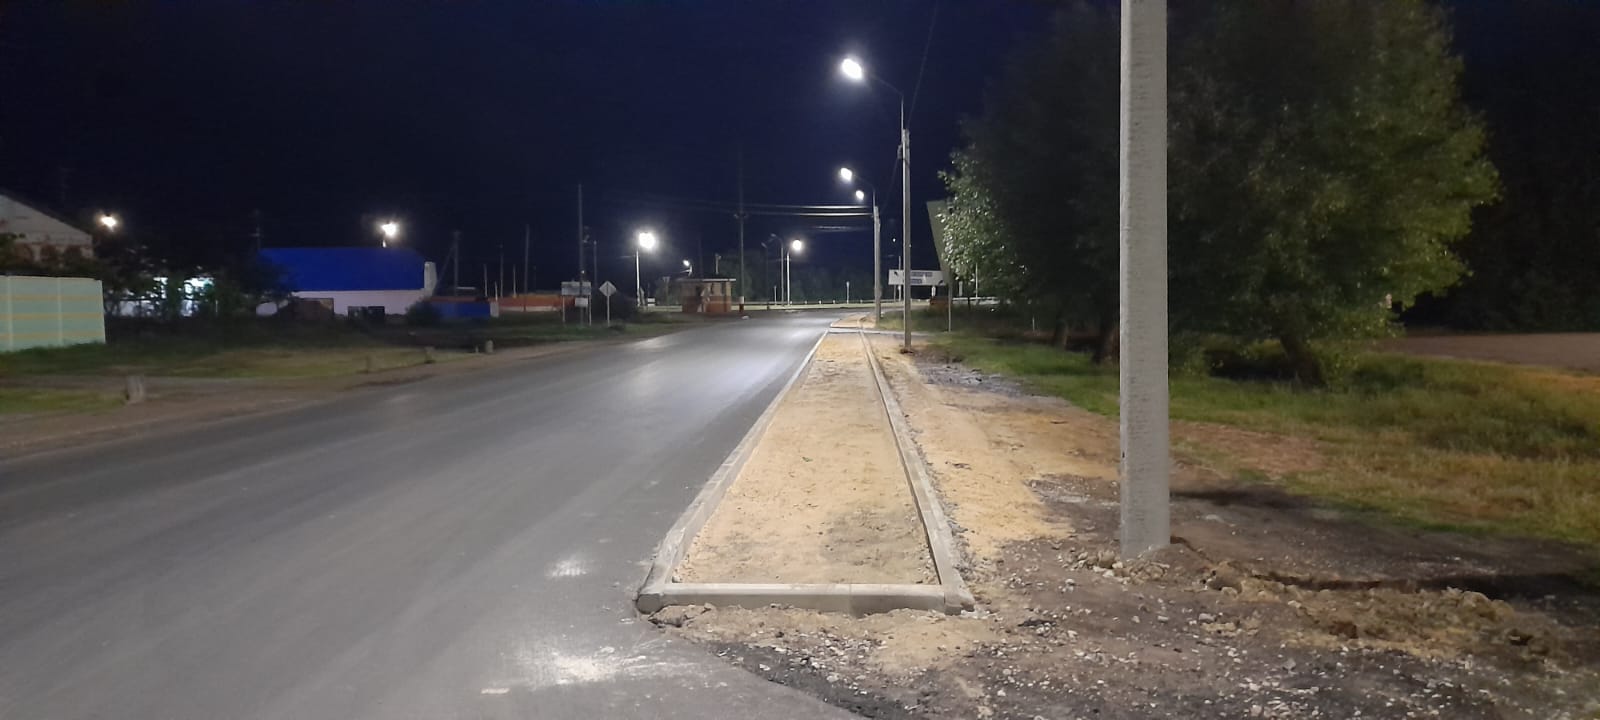 ПЗС помог с организацией освещения автодороги в Брянской области